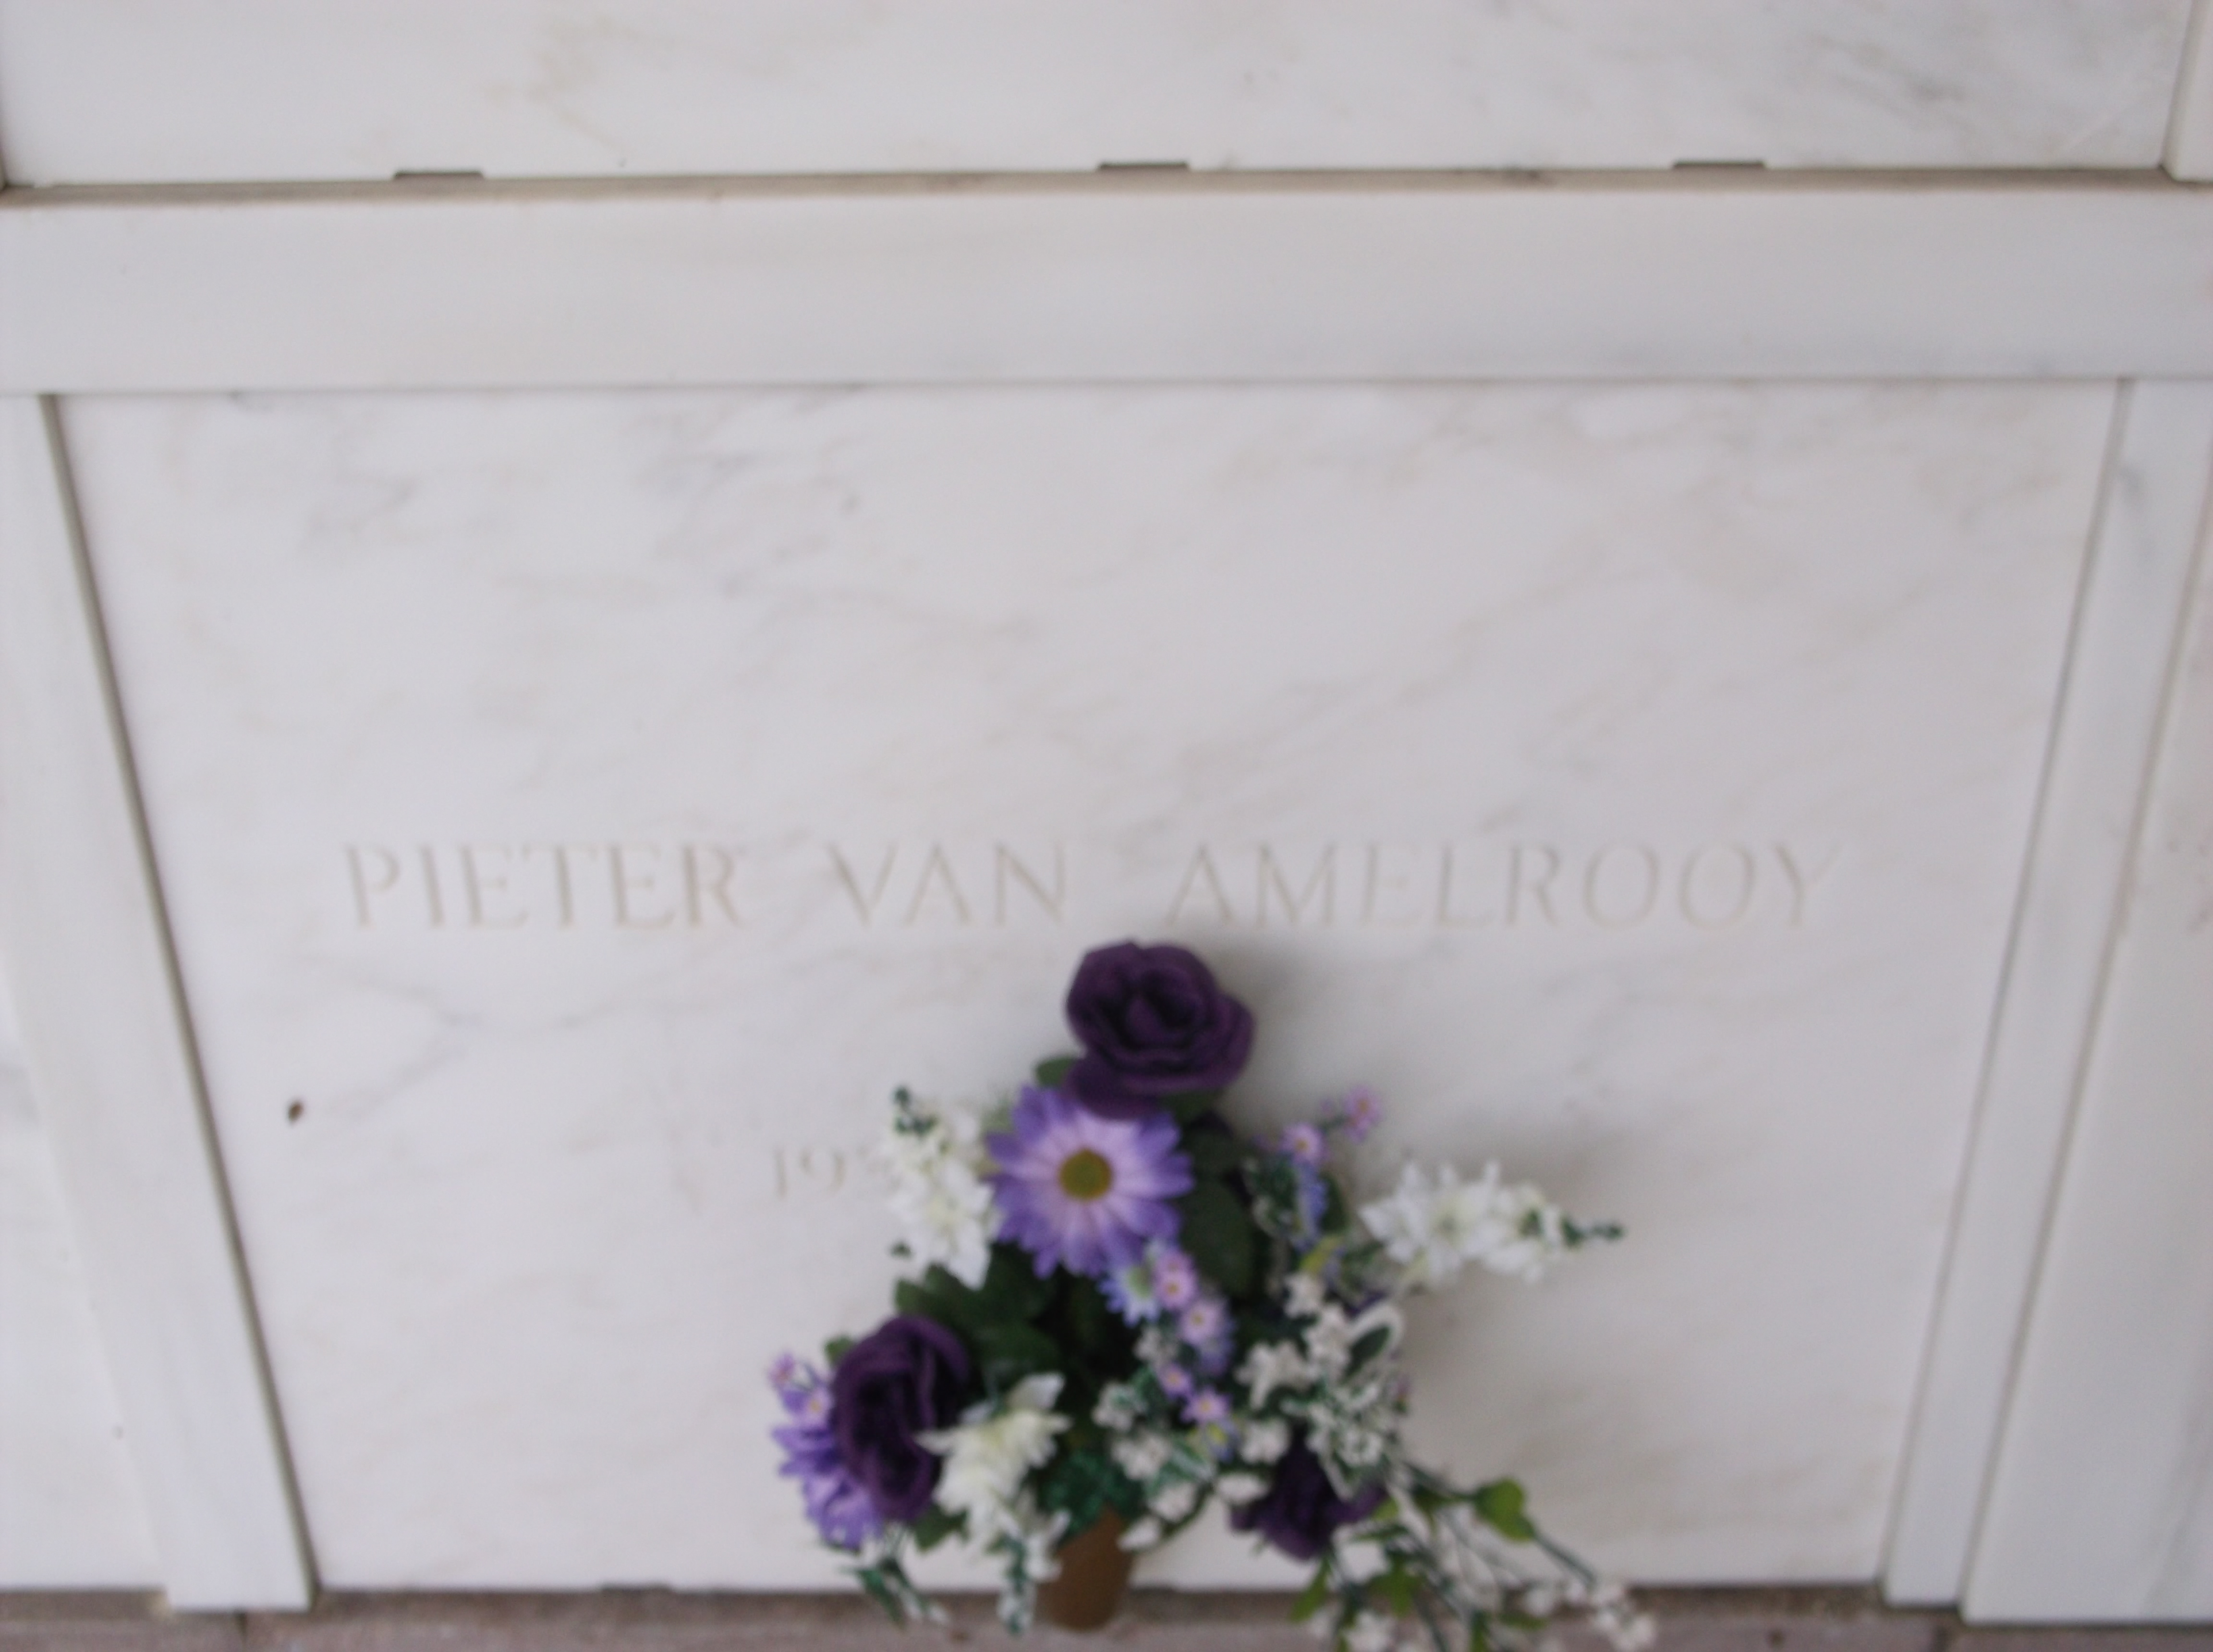 Pieter Van Amelrooy